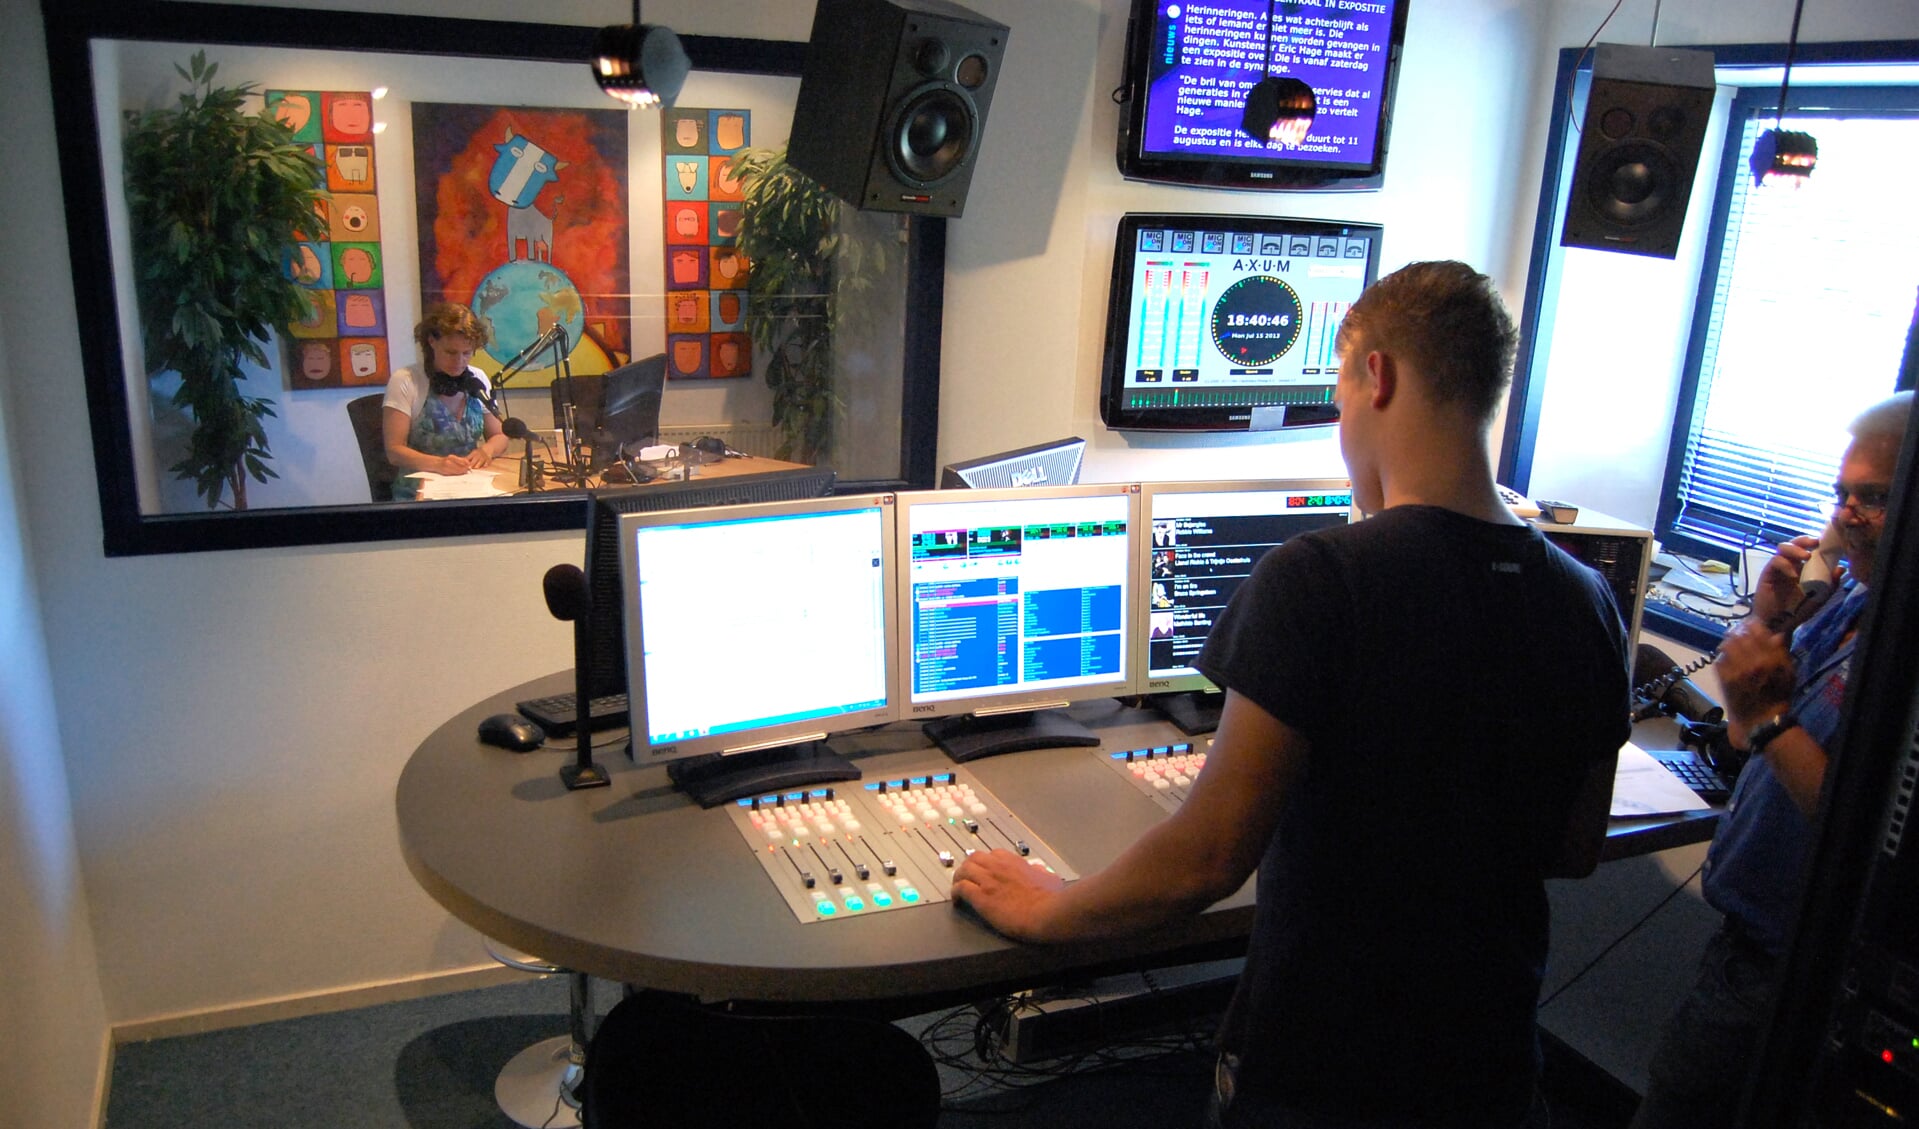 De eerste uitzending van Radio Weesp vanuit de nieuwe studio, maandag